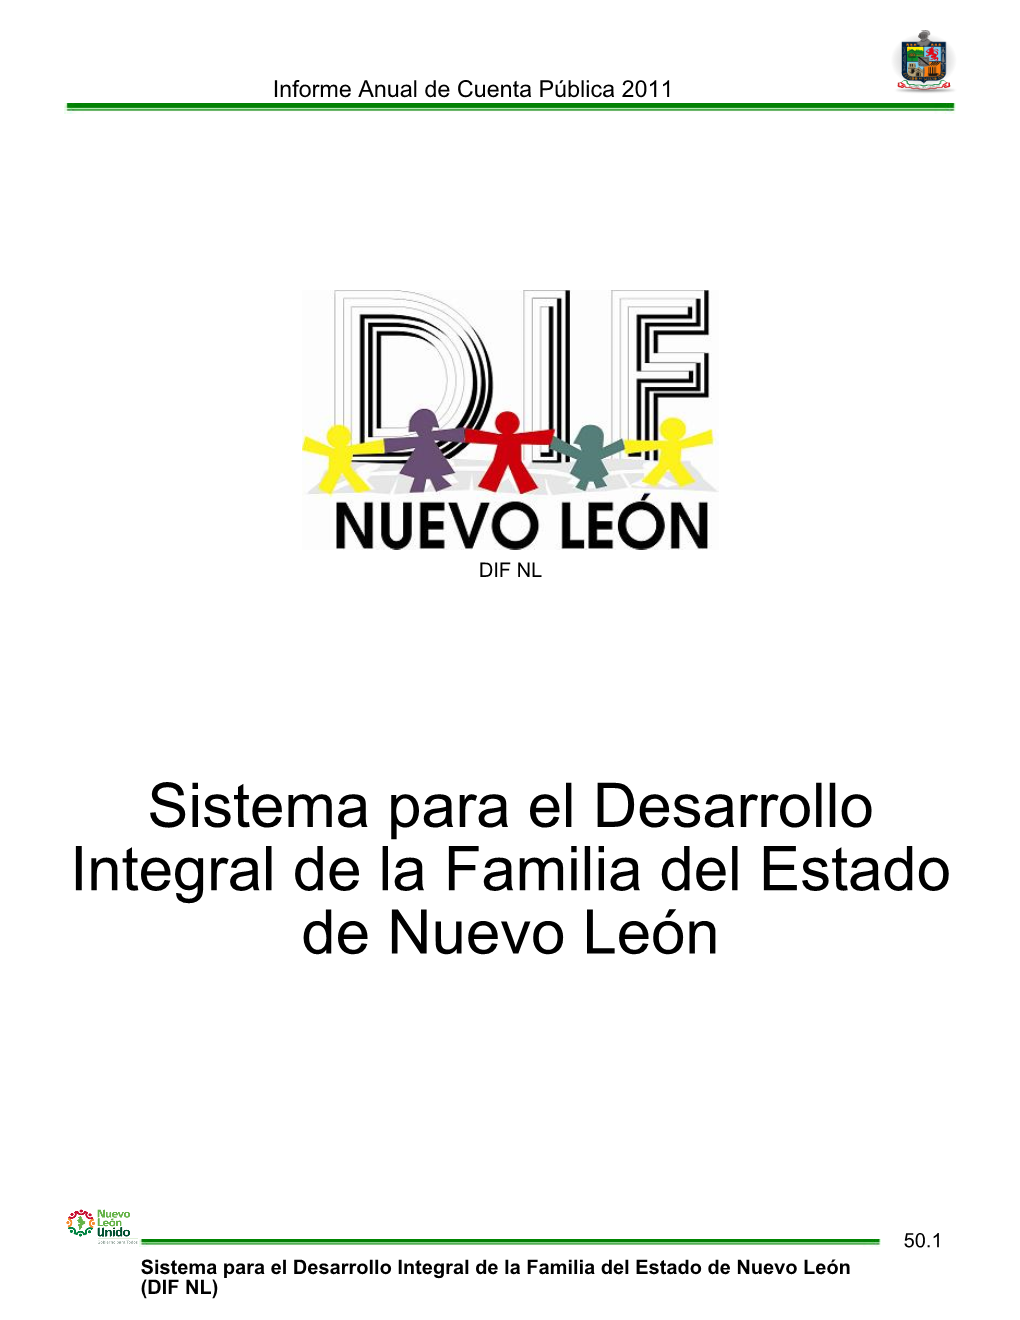 Sistema Para El Desarrollo Integral De La Familia Del Estado De Nuevo León